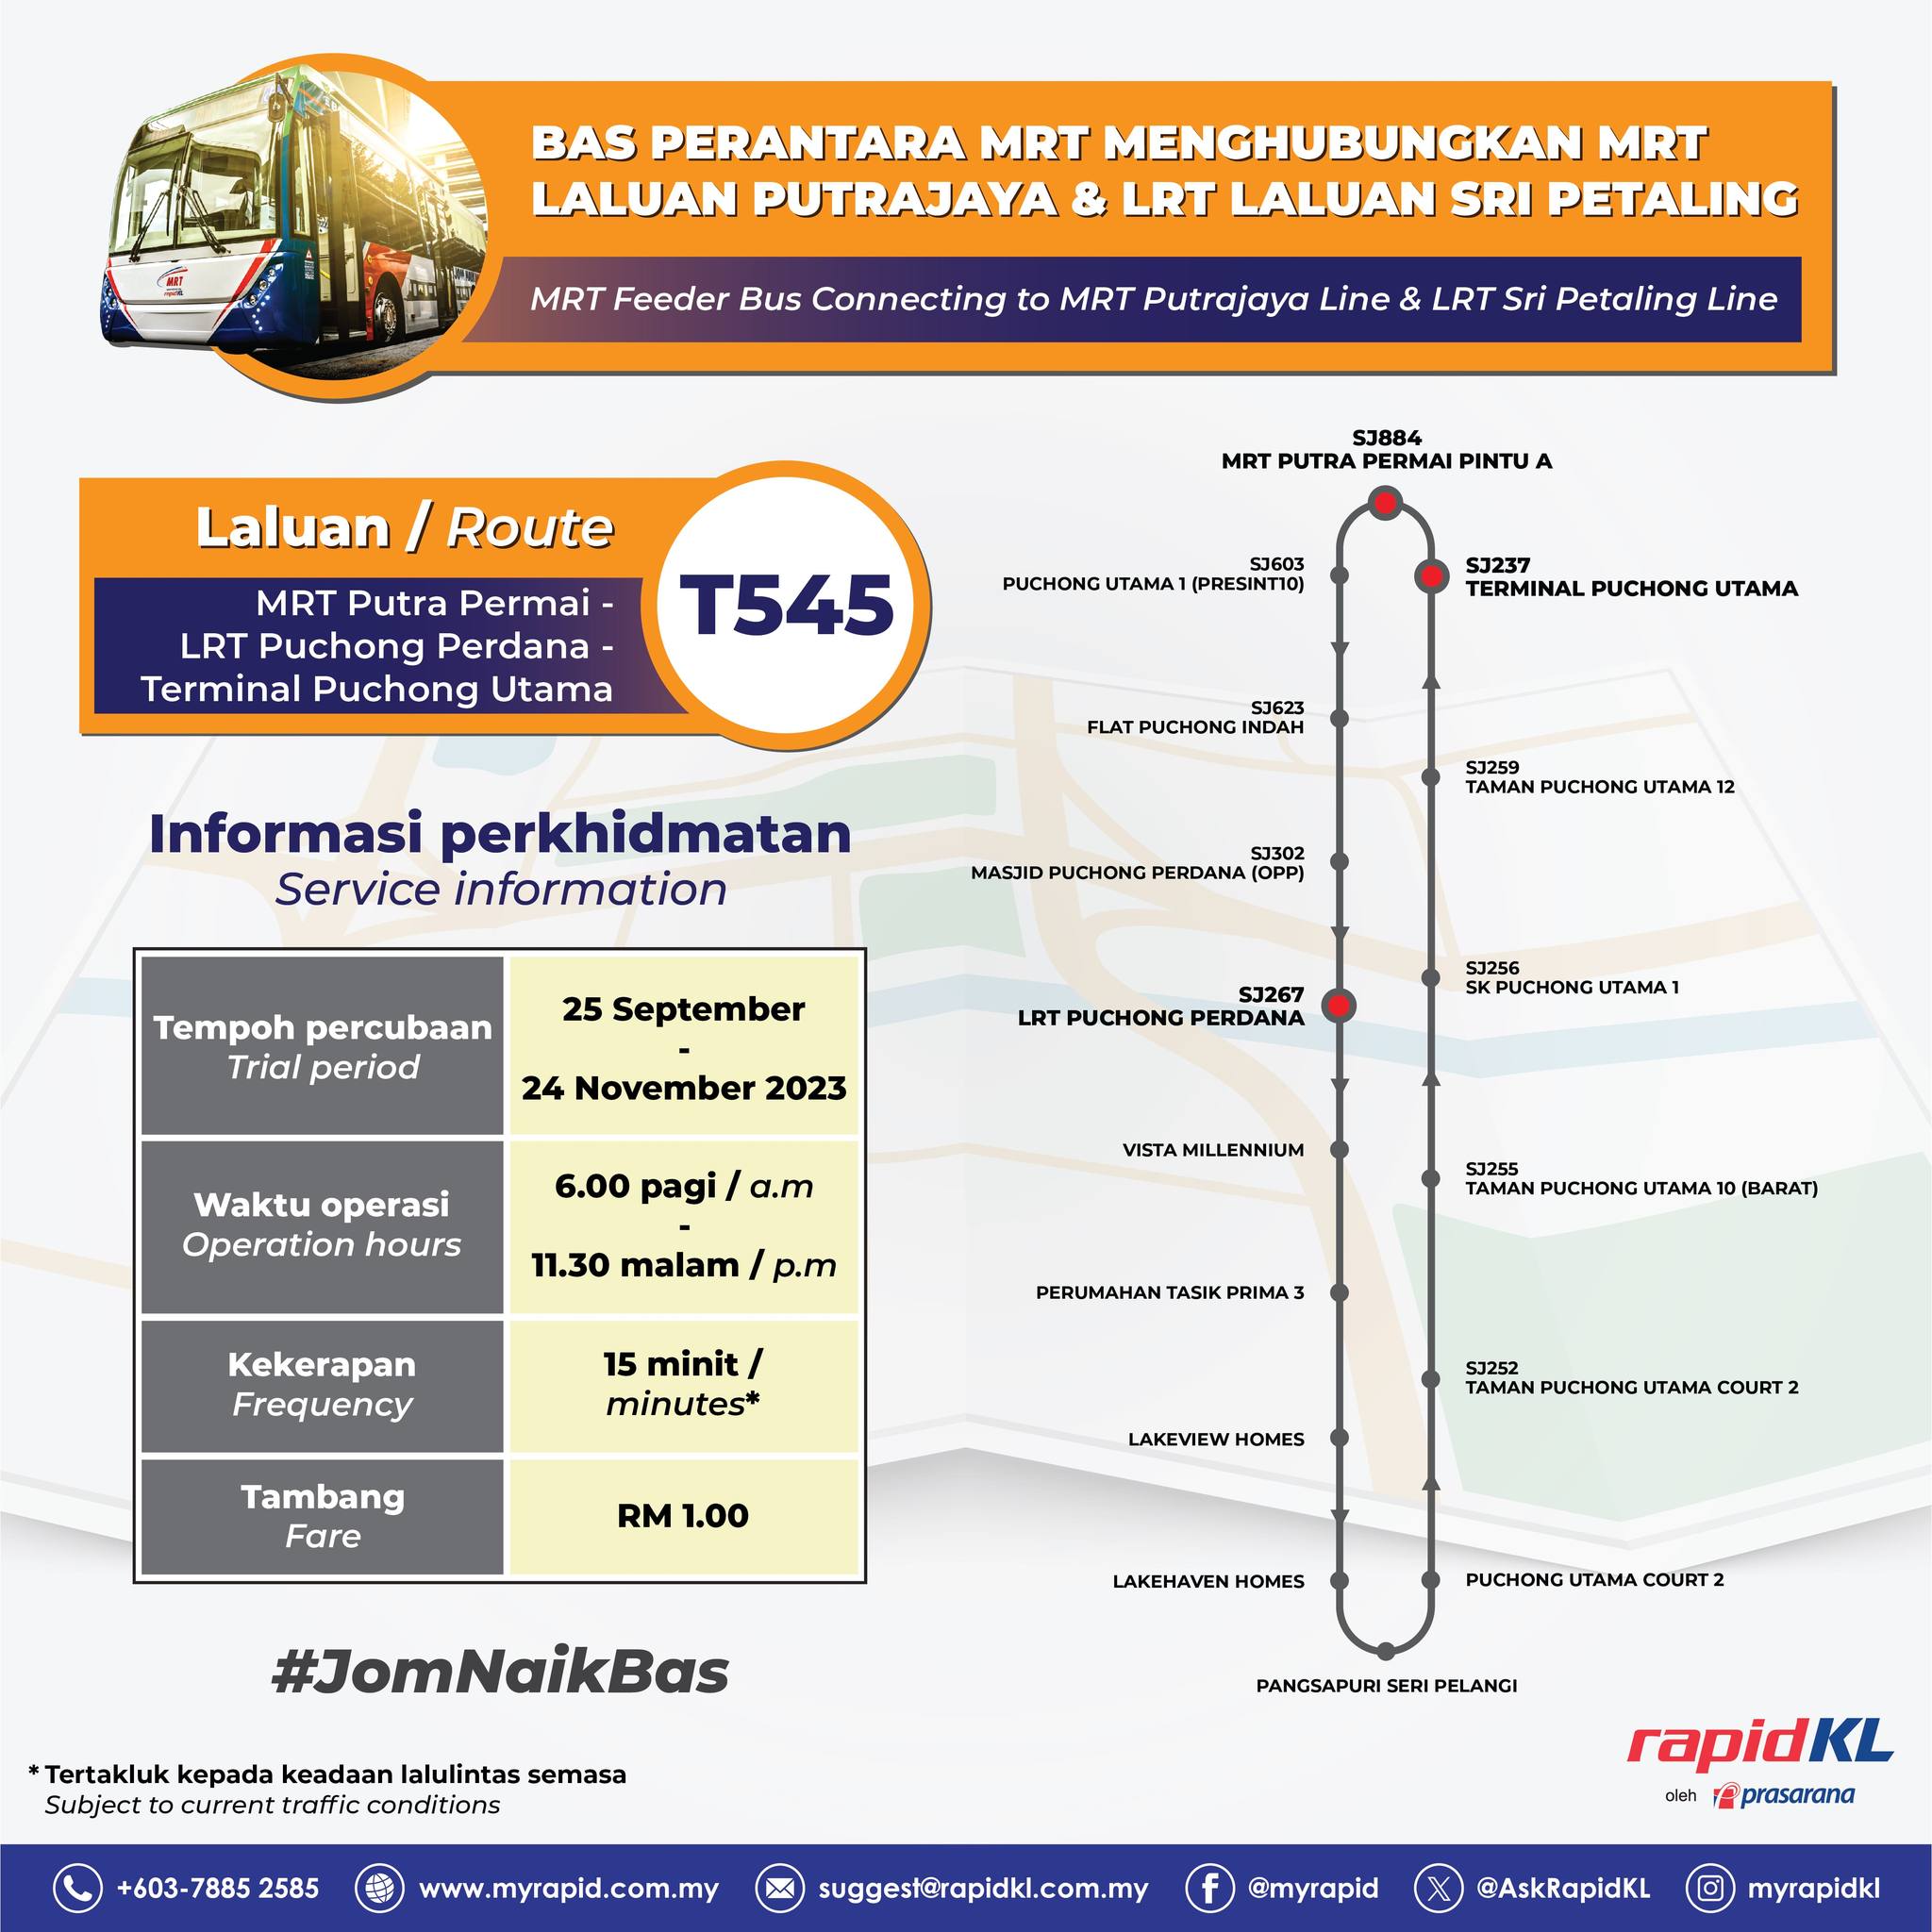 New T545 MRT feeder bus